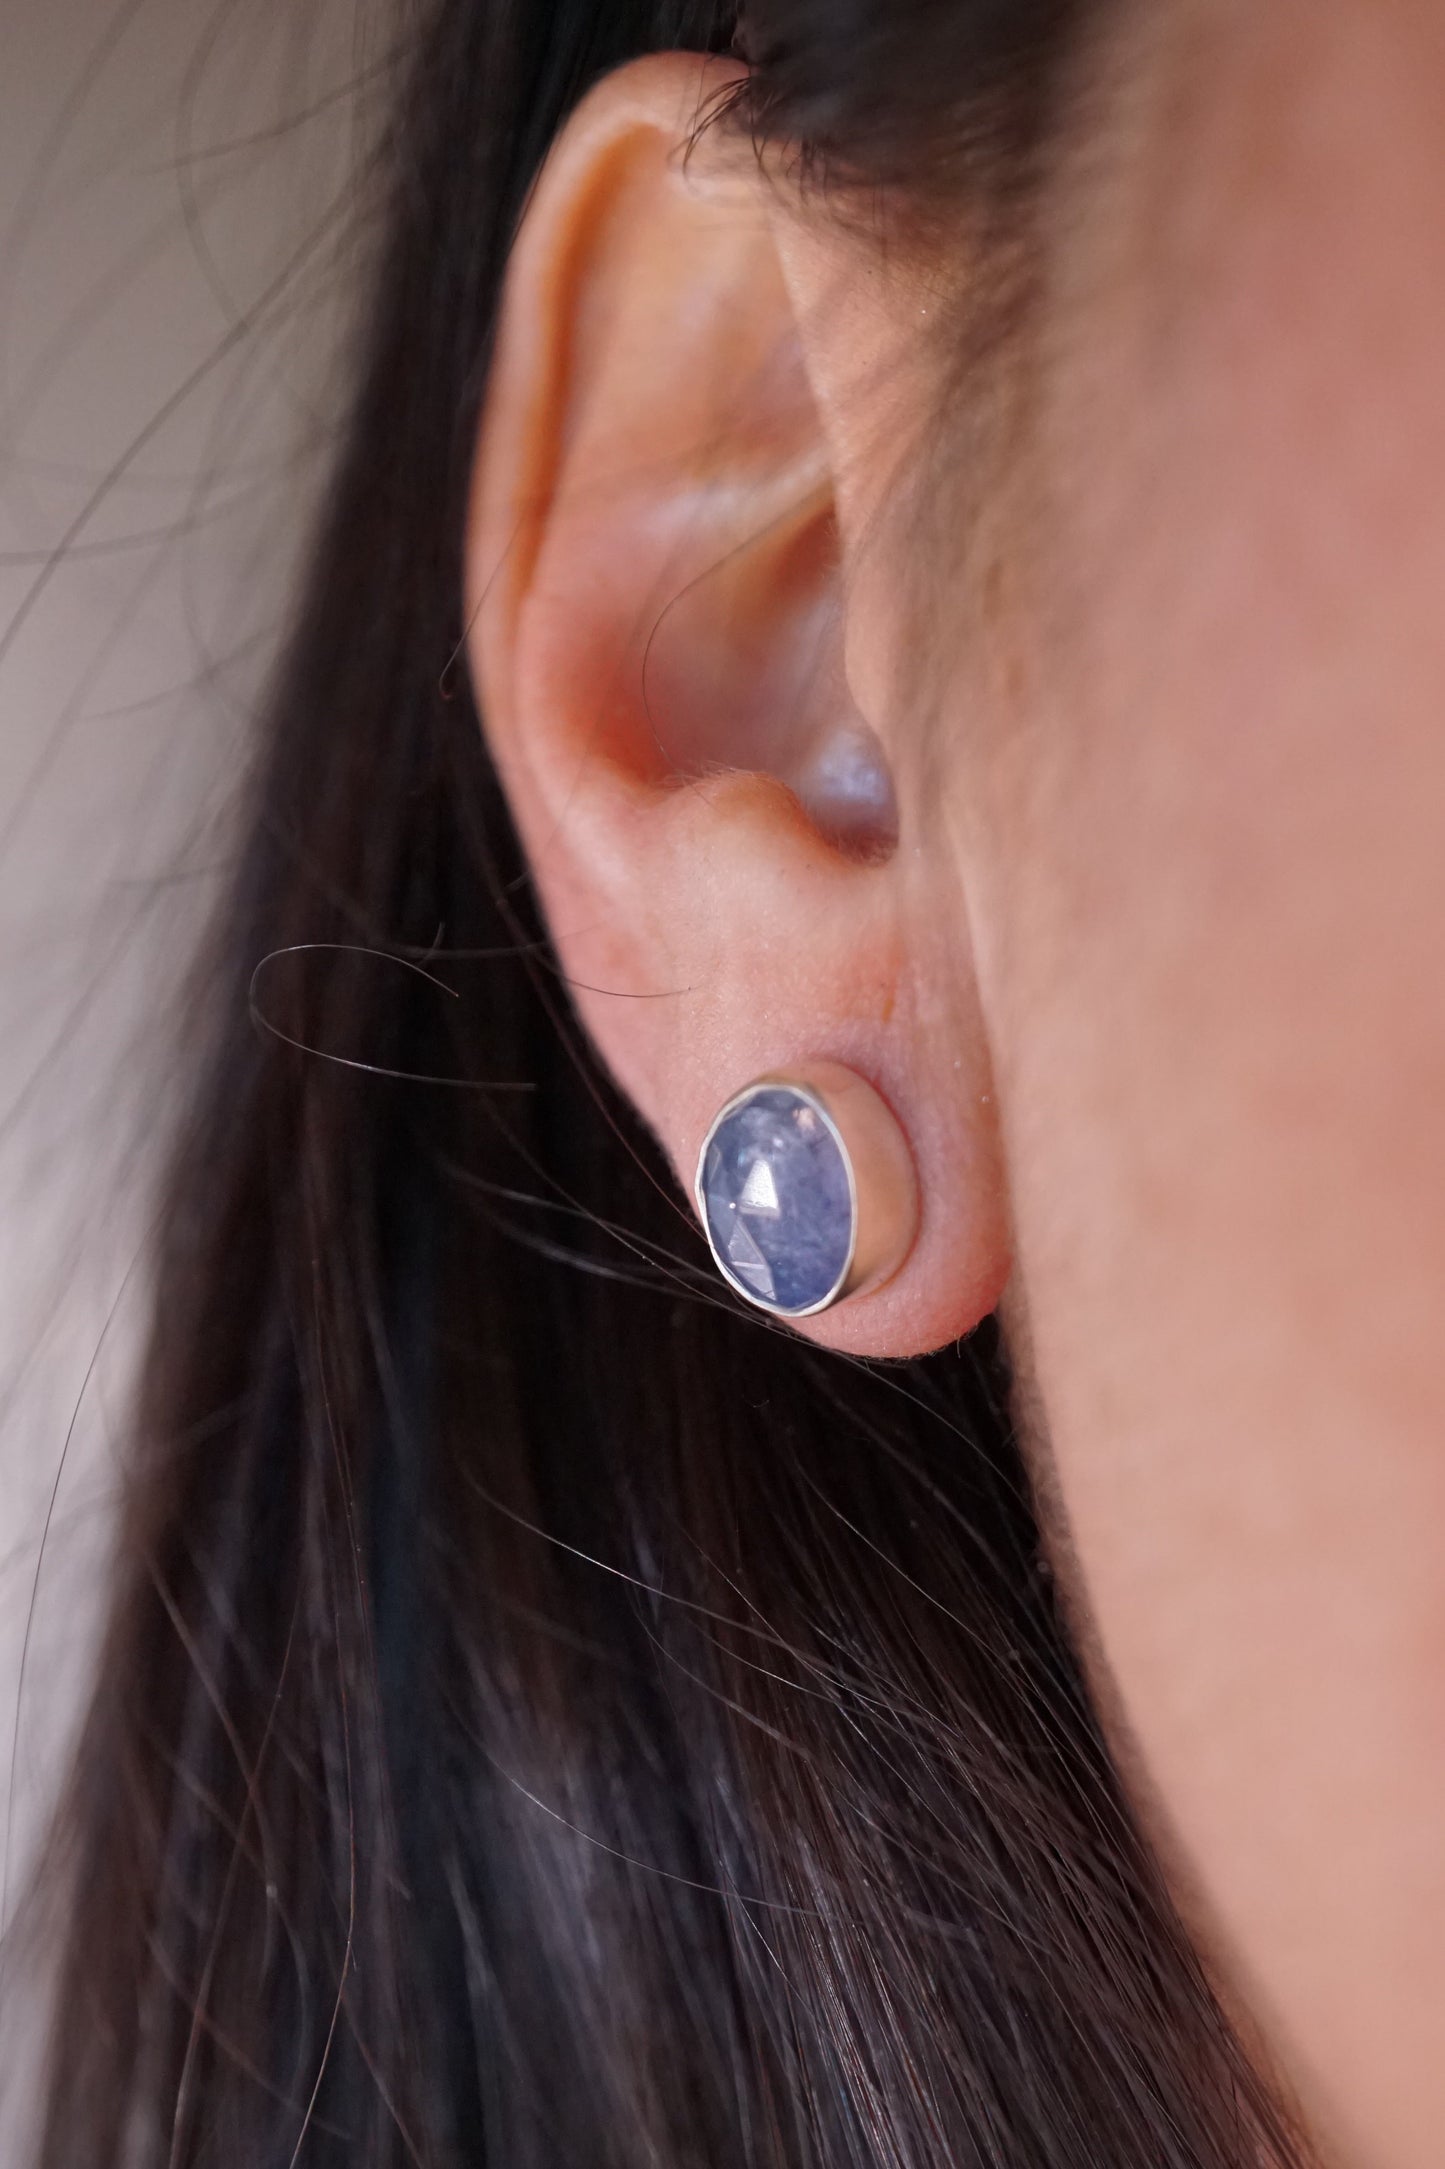 faceted periwinkle tanzanite stud earrings - Lumenrose